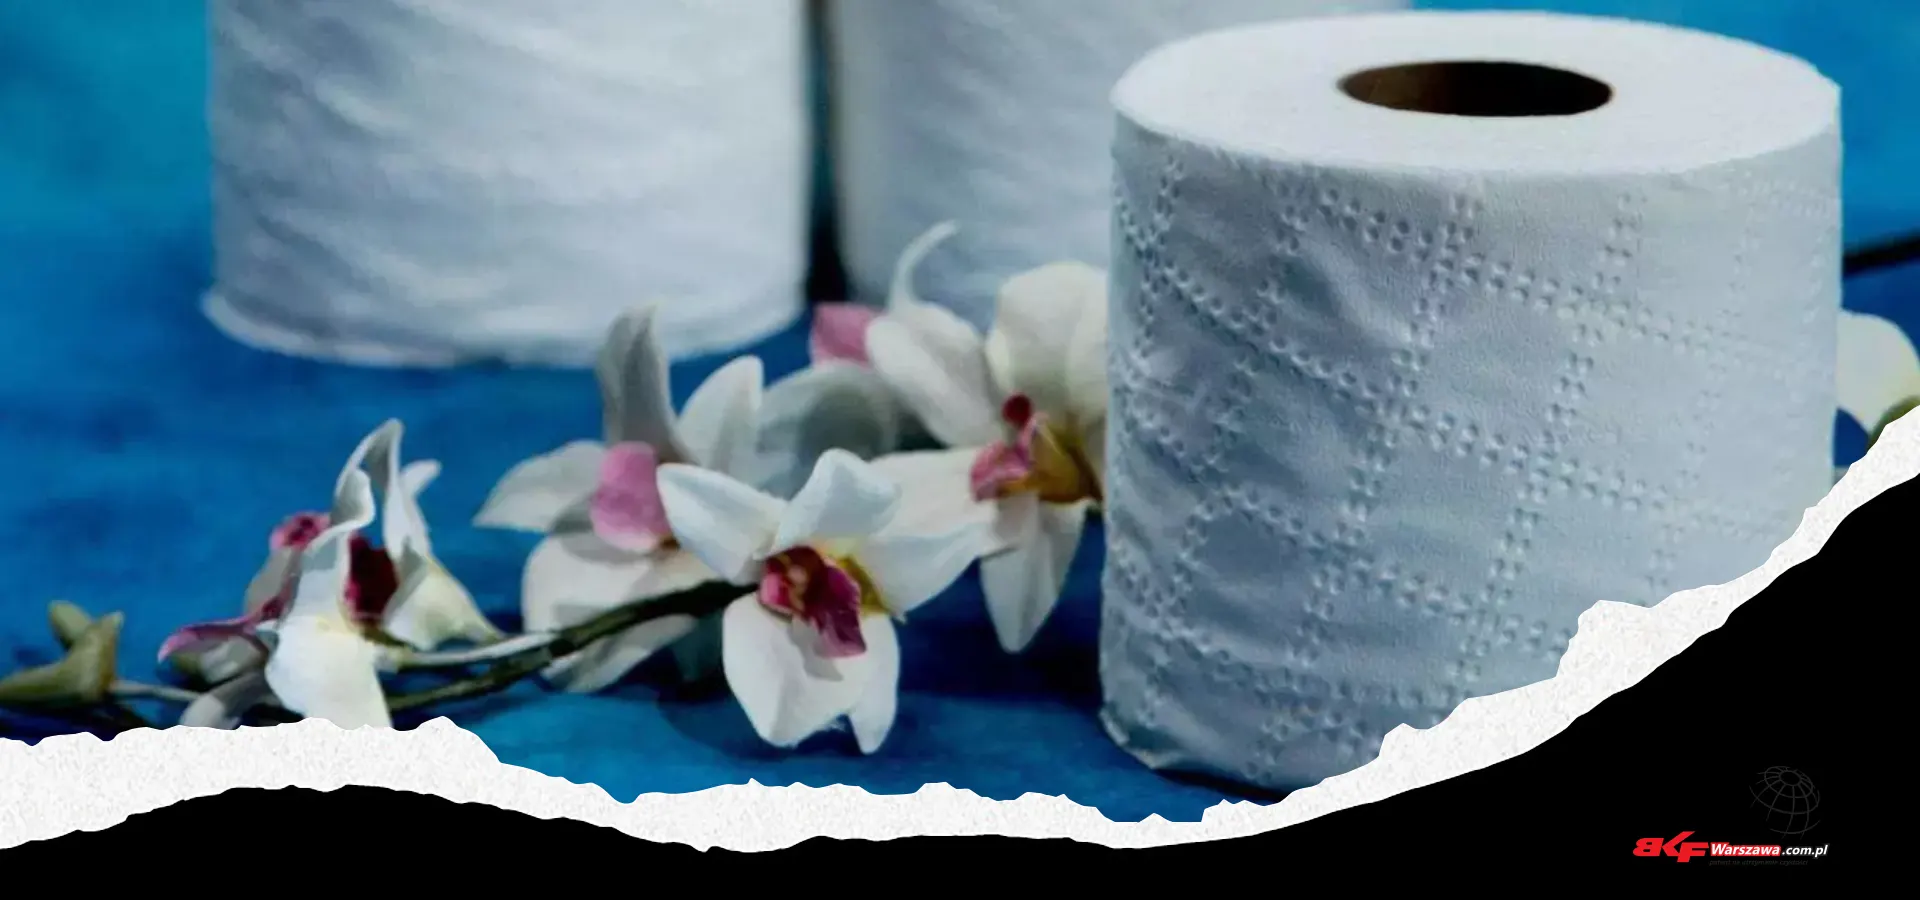 biały papier toaletowy z kwiatem